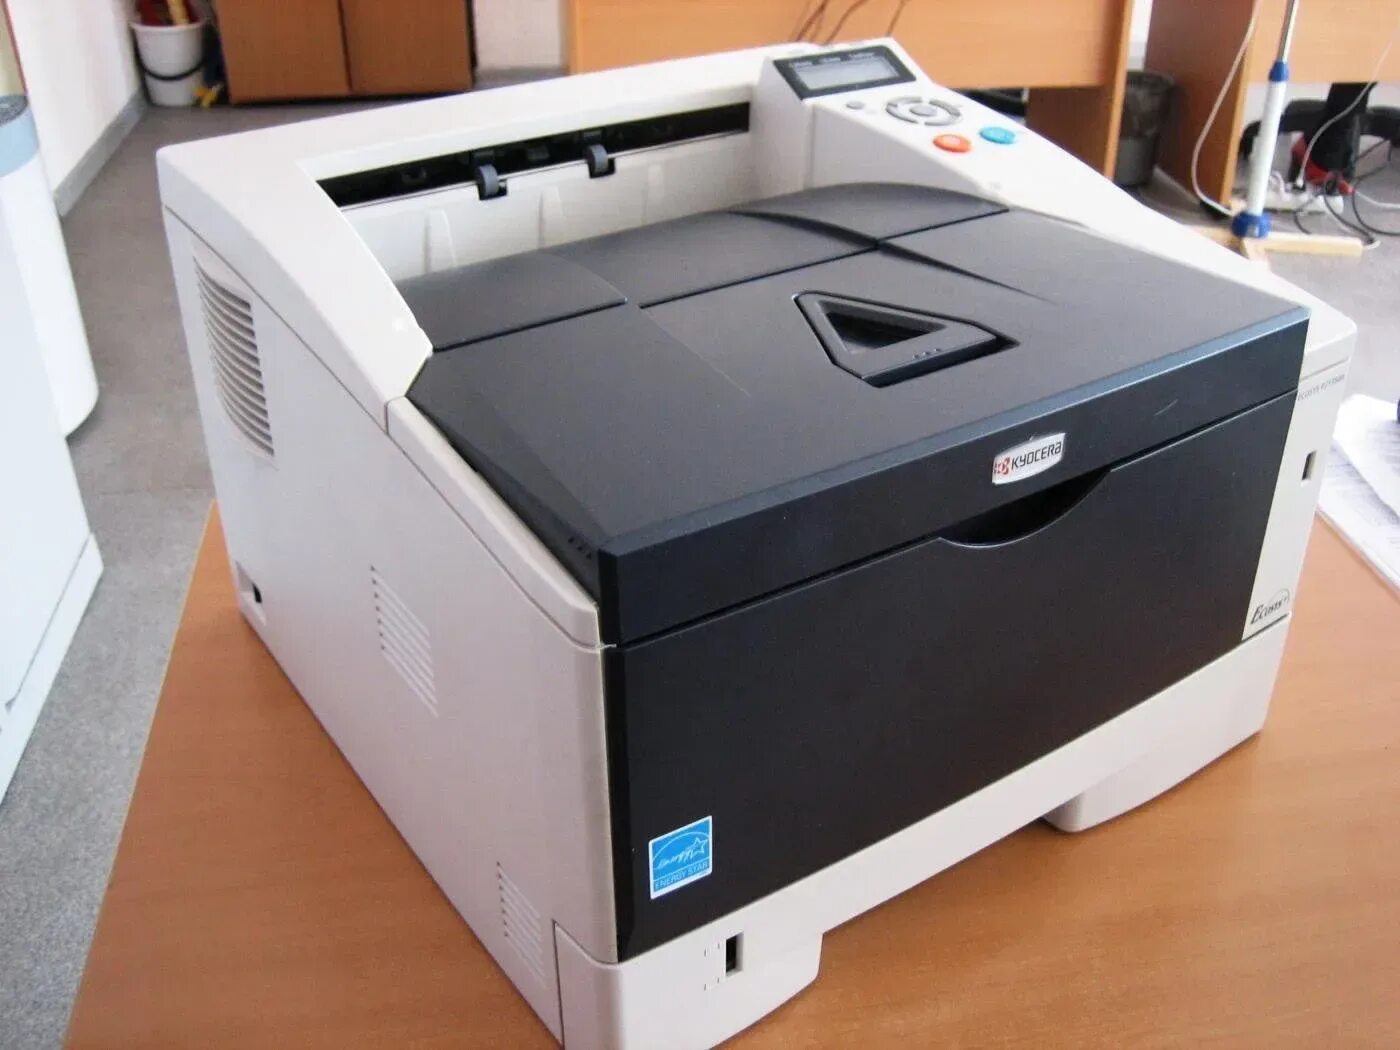 Принтер Kyocera p2135dn. Kyocera ECOSYS p2135dn. Принтер куосера 2135. Принтер экосис p2135dn.